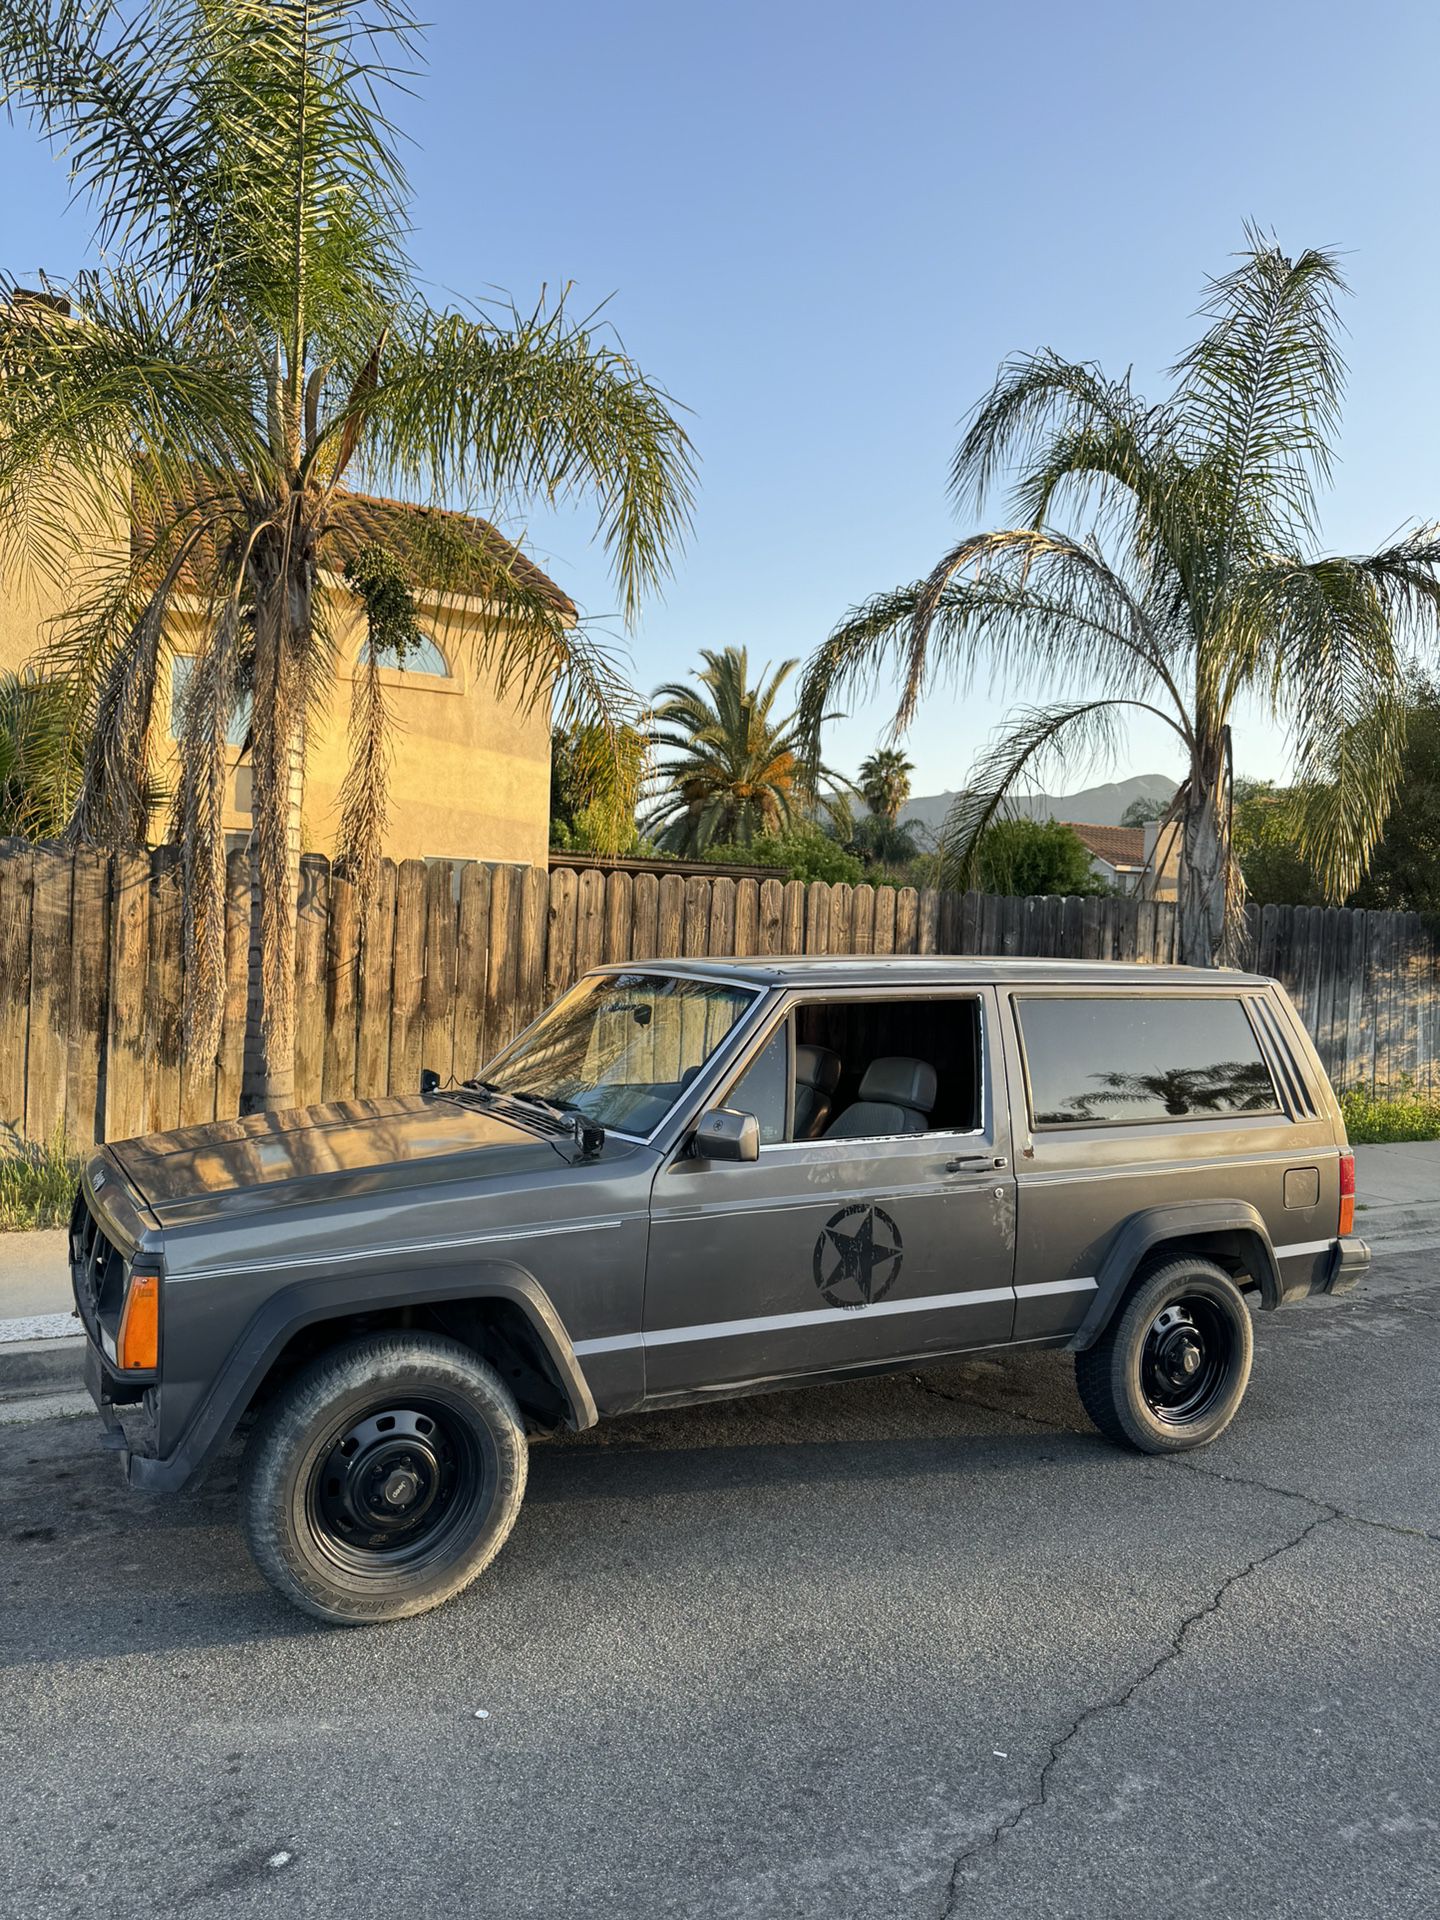 1989 Jeep Cherokee